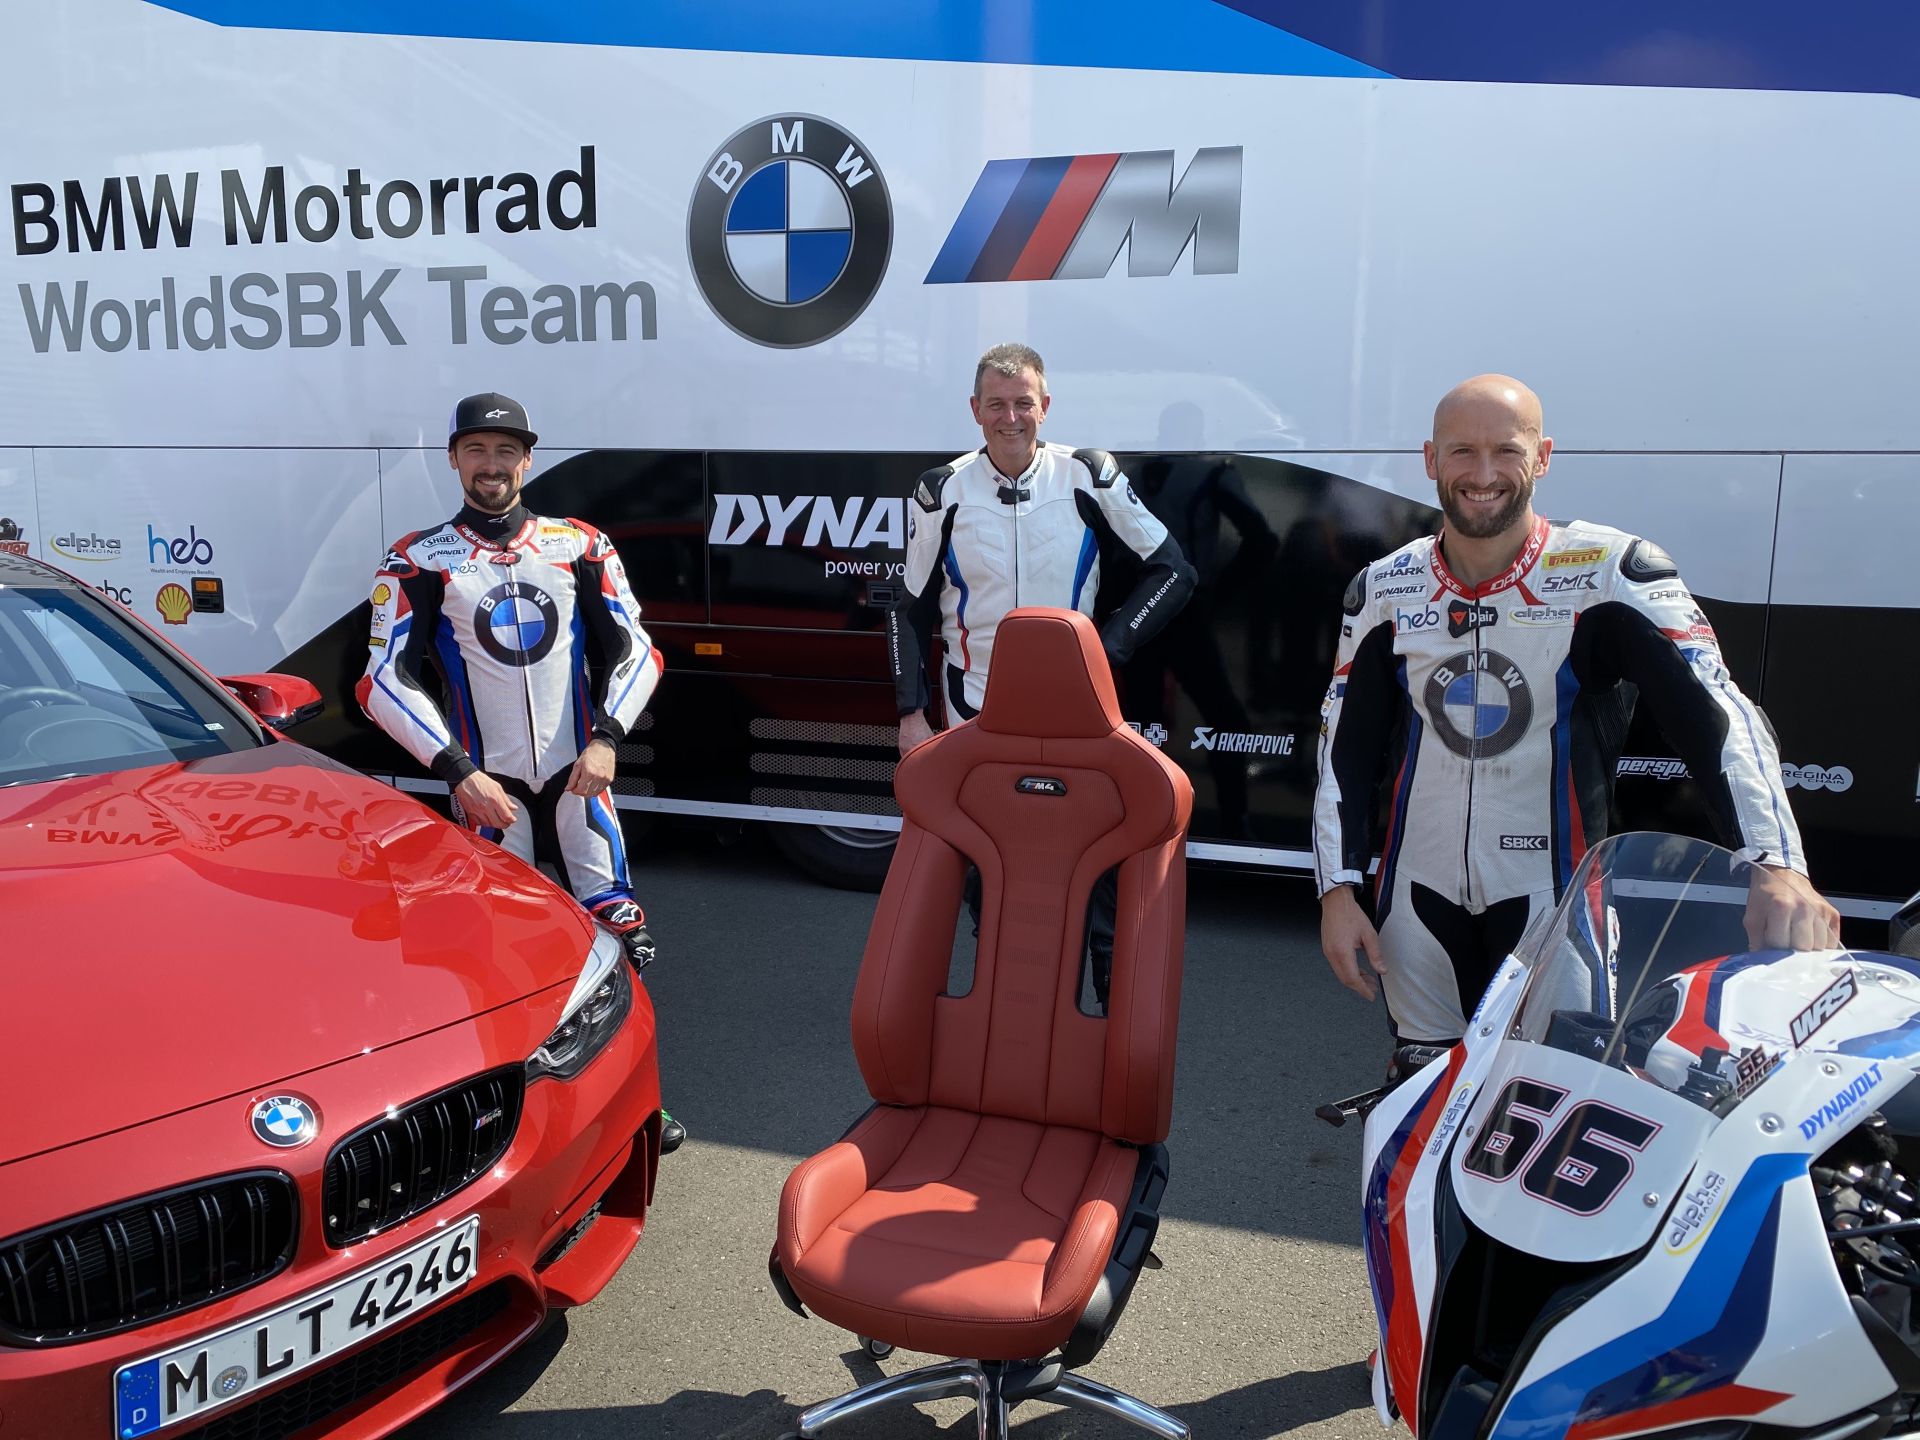 BMW M Seats for WorldSBK team 1